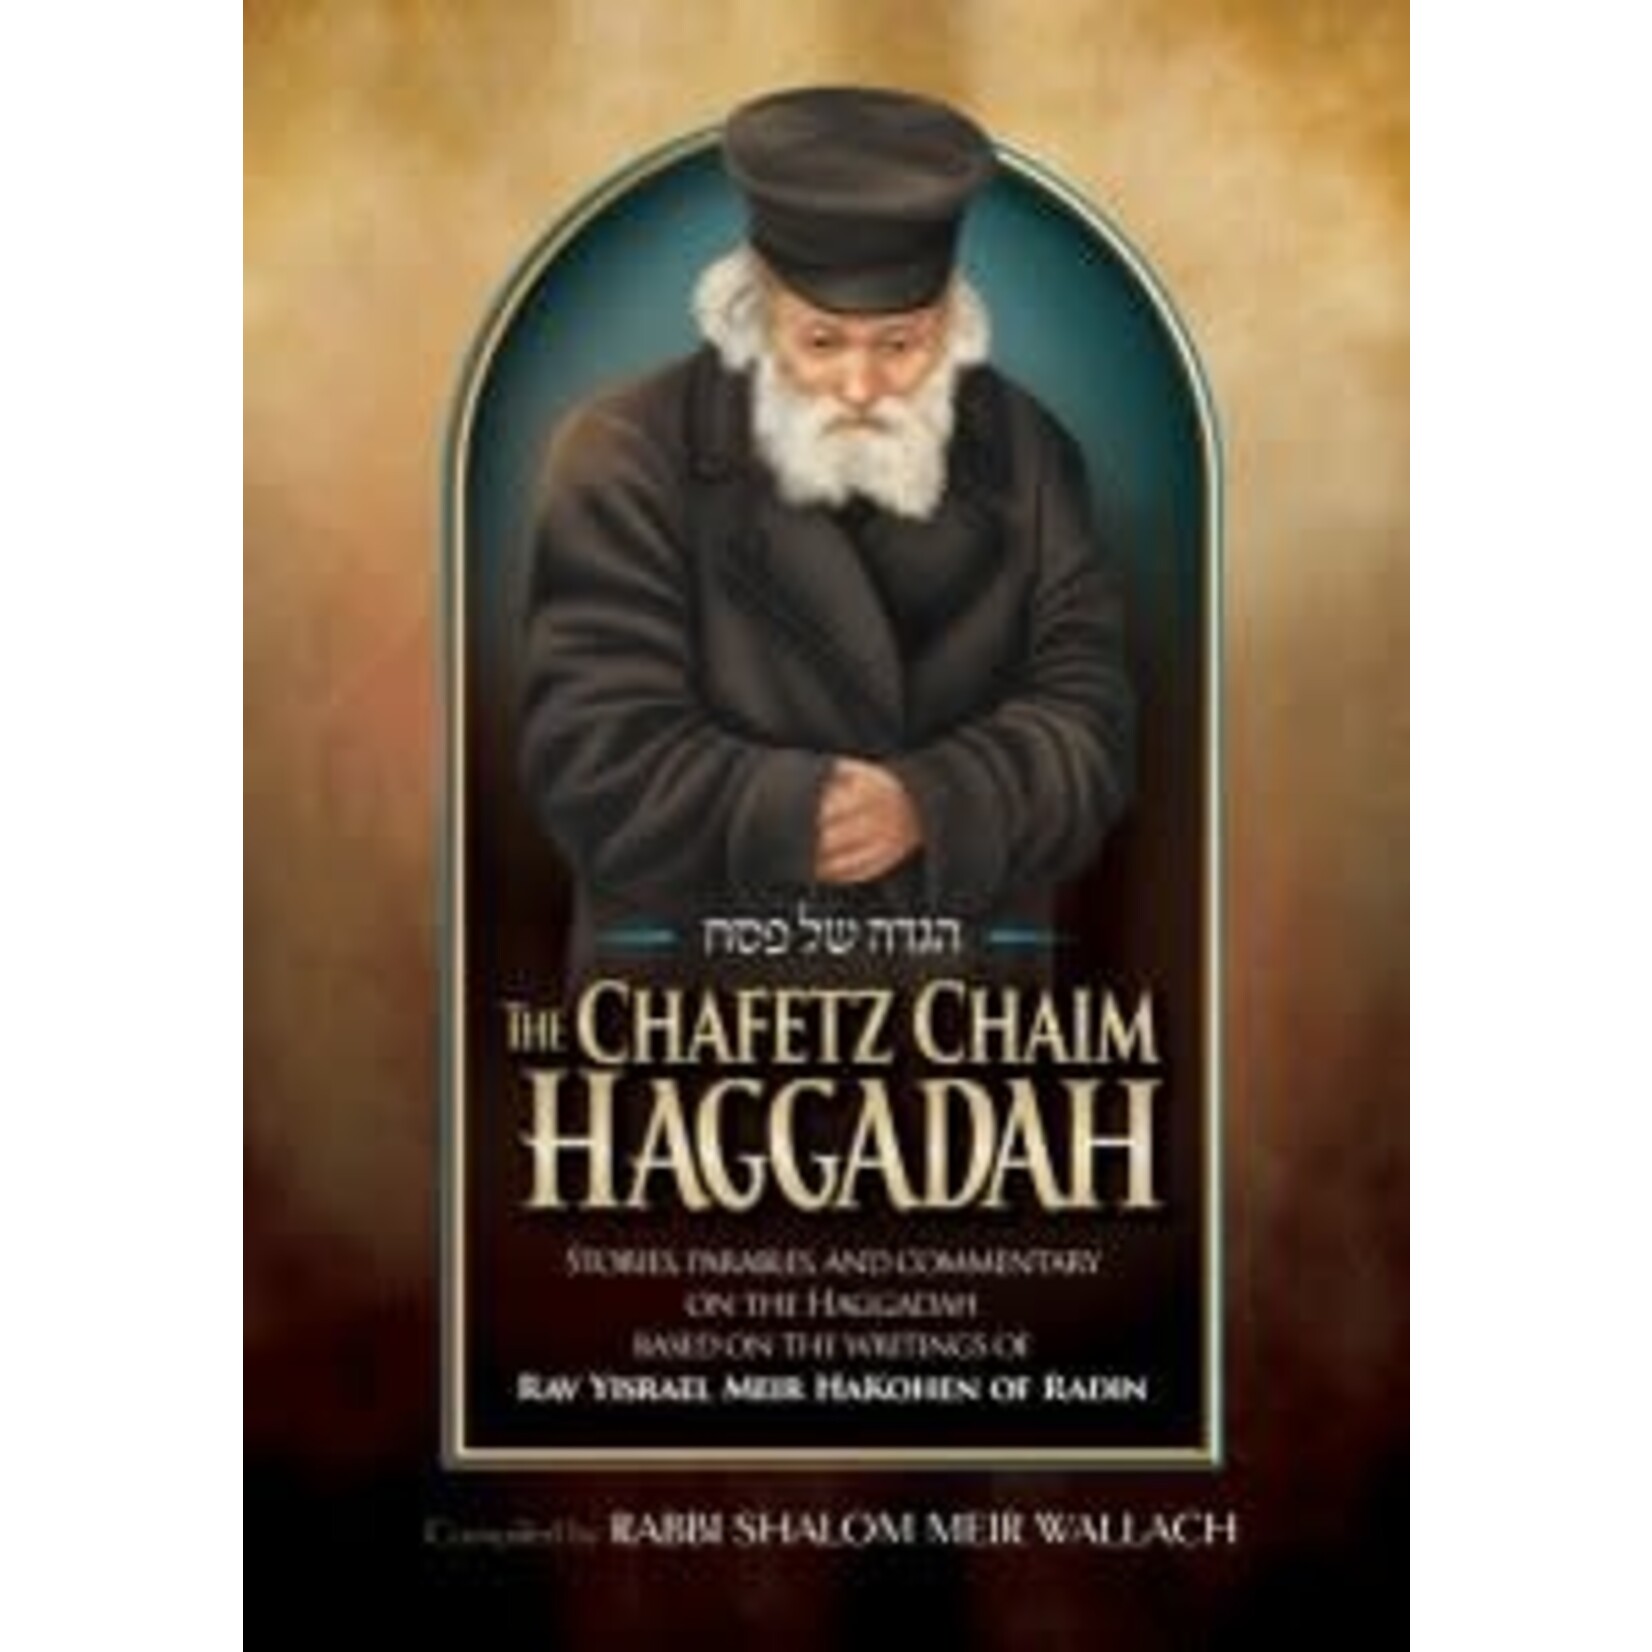 The Chafetz Chaim Haggadah